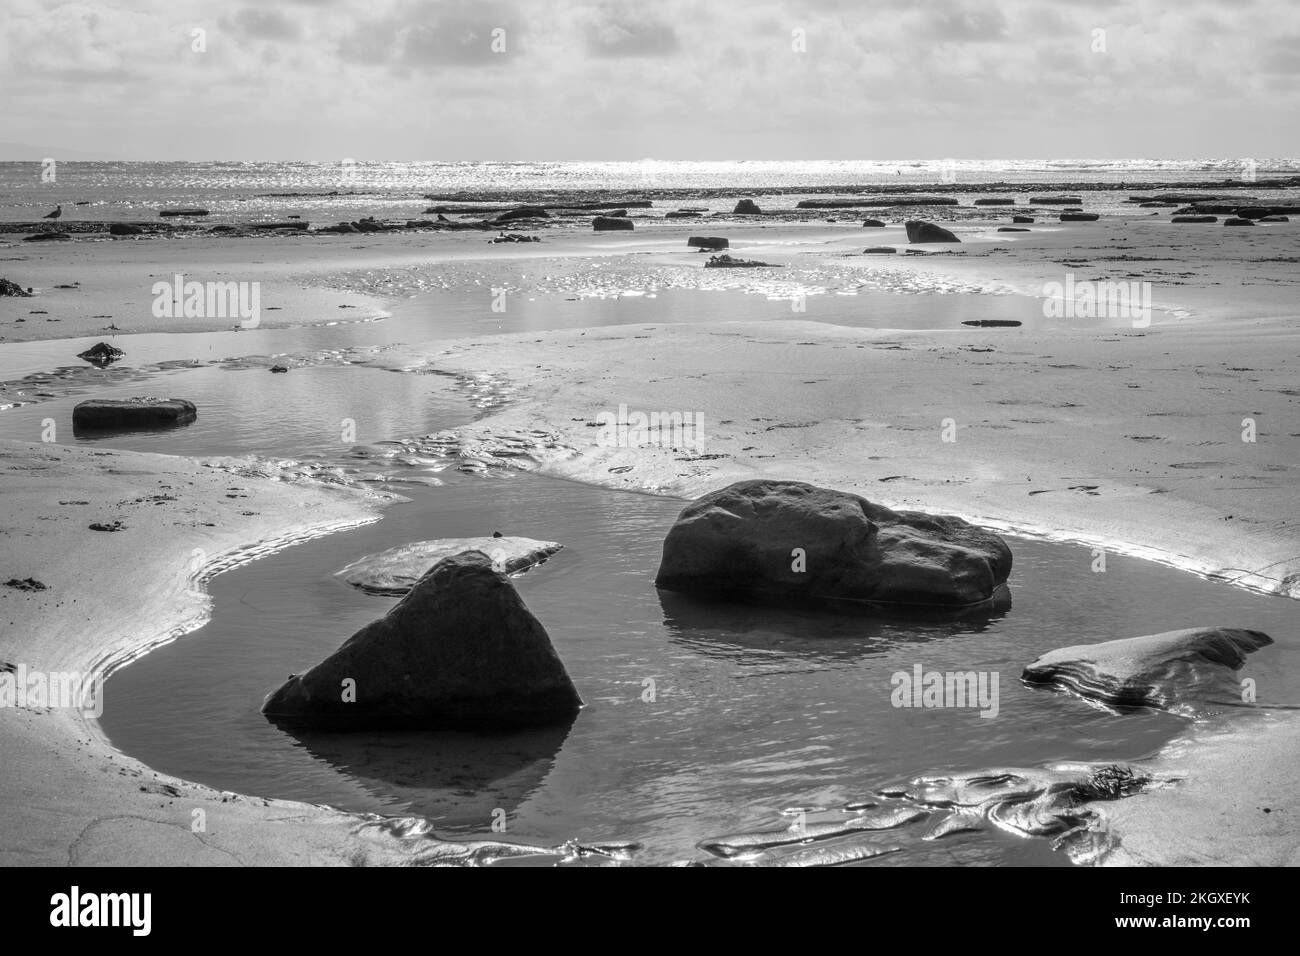 Noir et blanc de piscines de roche sur une belle plage de sable déserte à Lyme Regis Dorset Angleterre côte jurassique Banque D'Images